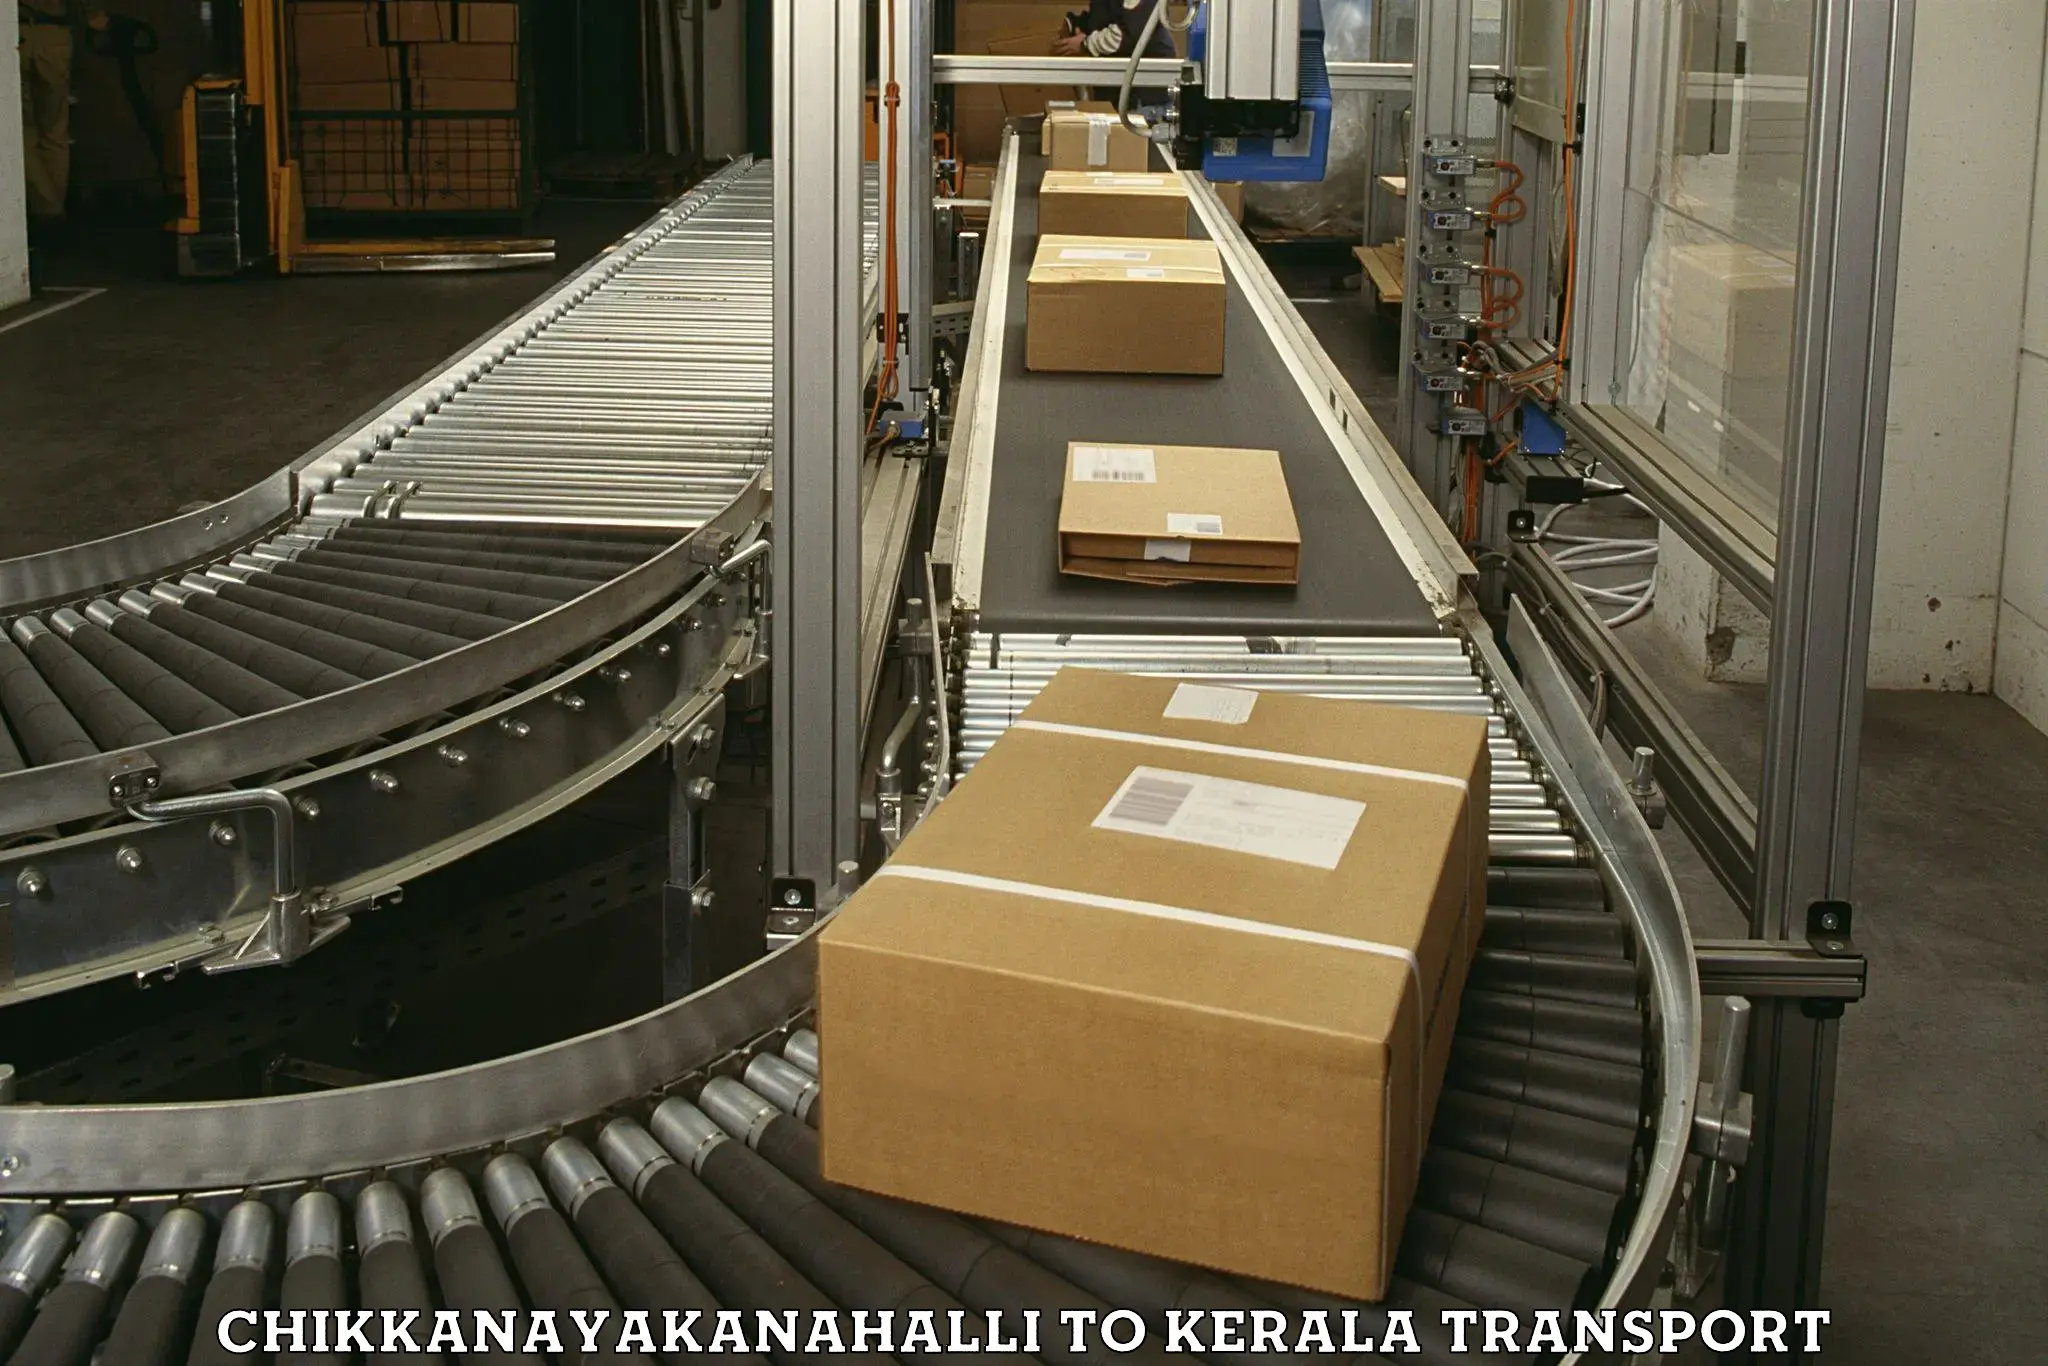 Interstate goods transport Chikkanayakanahalli to Kerala